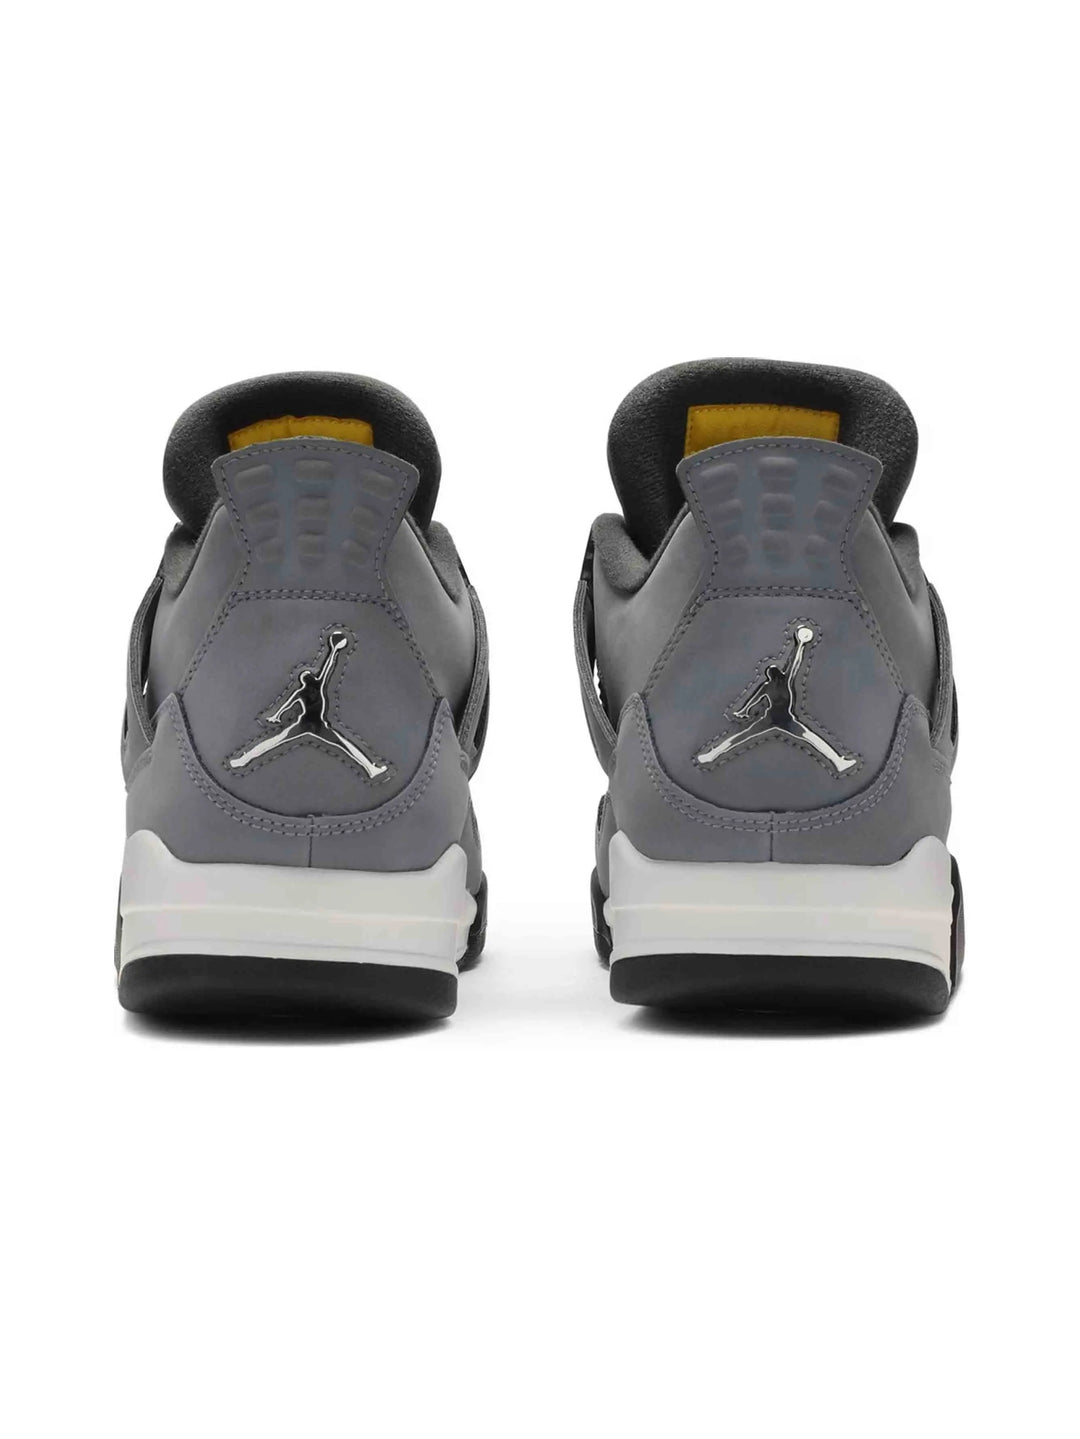 Nike Air Jordan 4 Retro Cool Grey (2019) Prior